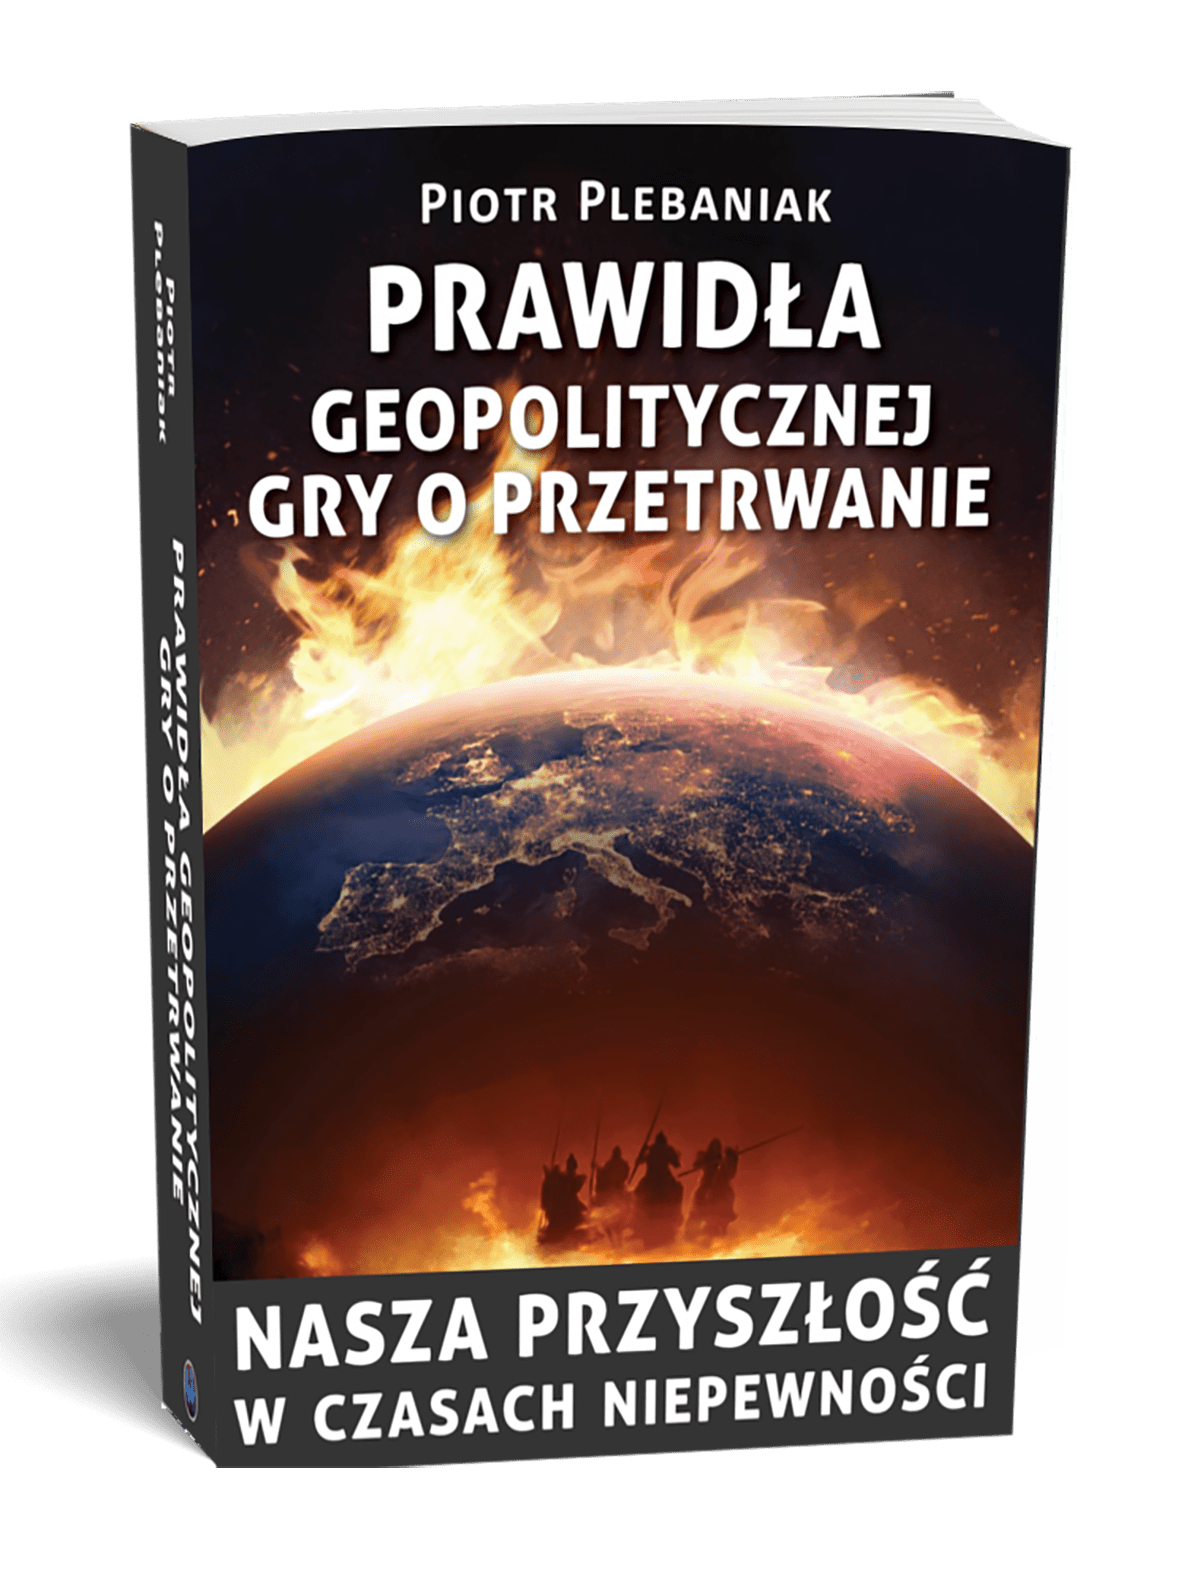 Książka Piotr Plebaniak, Prawidła geopolitycznej gry o przetrwanie, gdzie kupić - lista księgarni (poniżej)